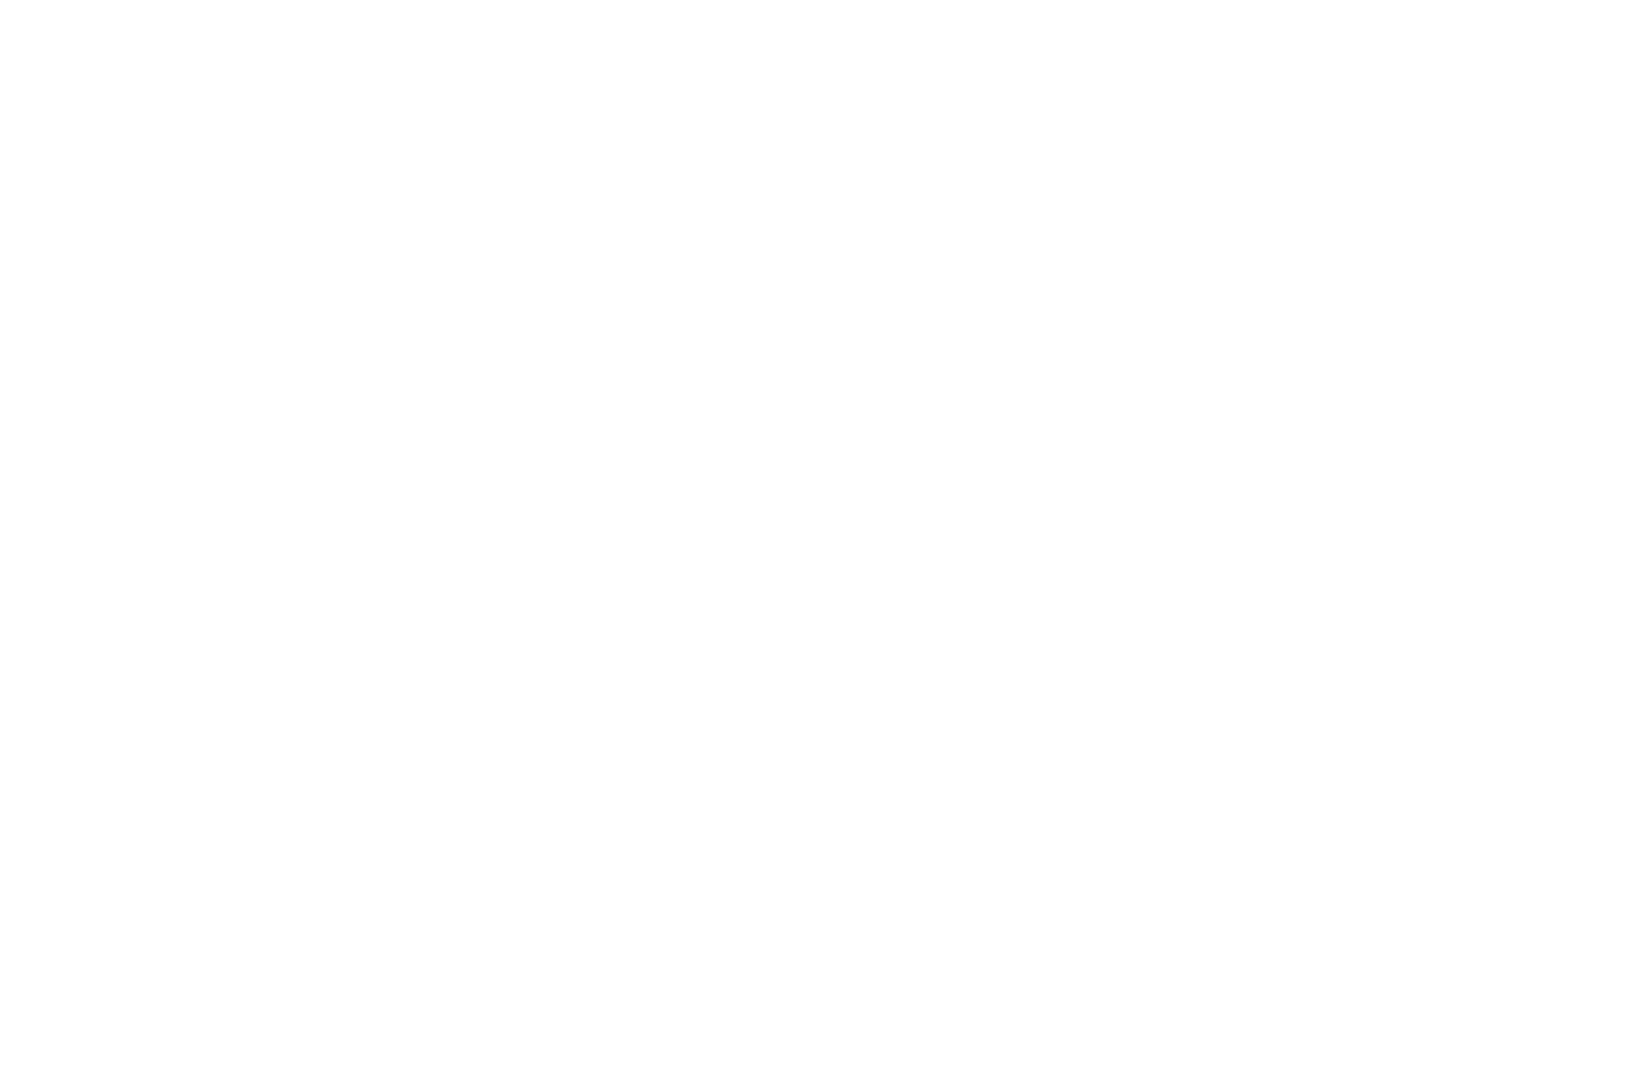 Saadin Dassum logo